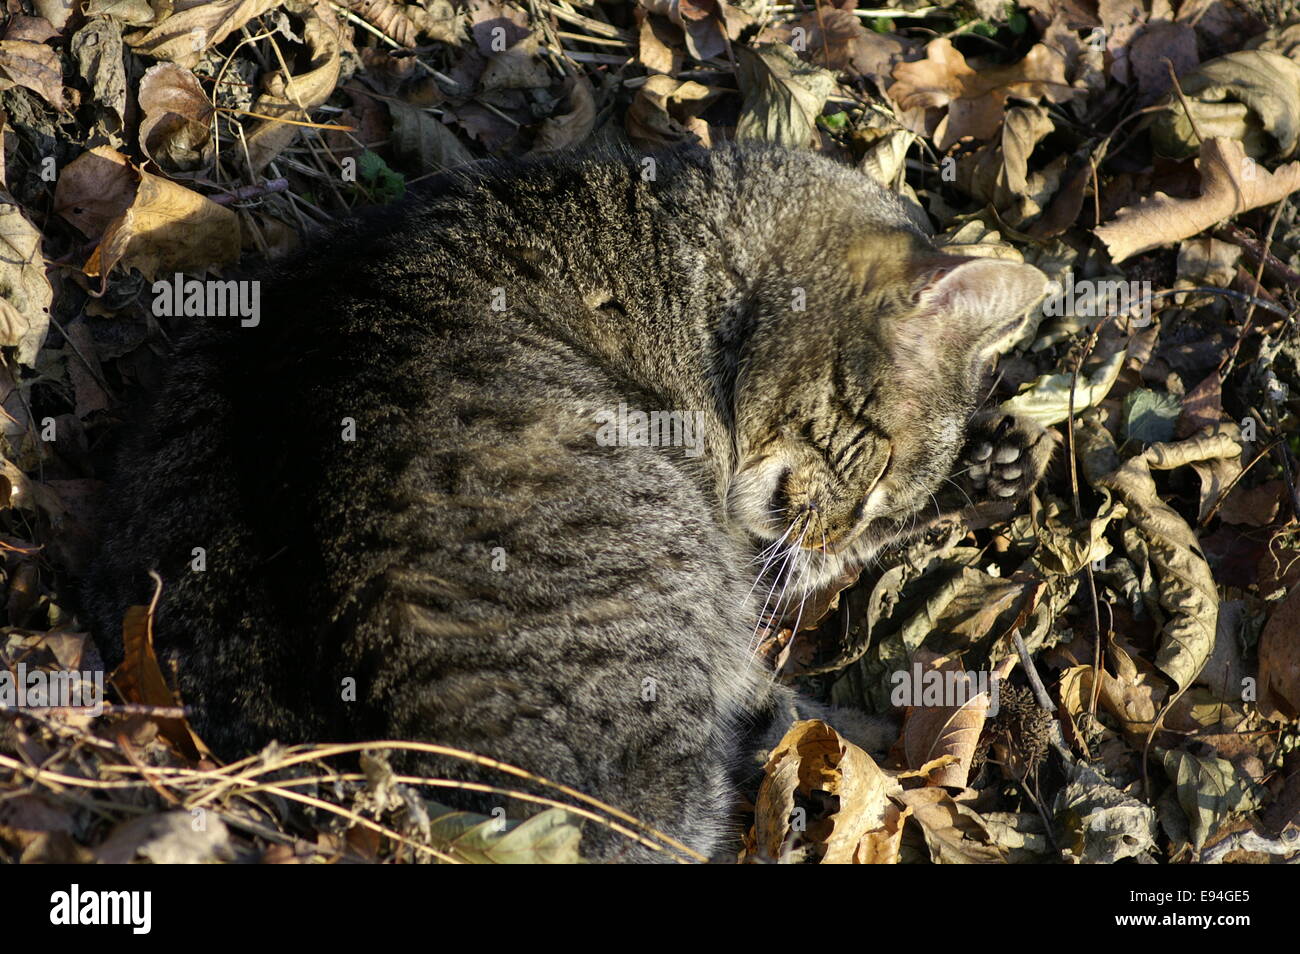 Kitty sleeping on fallen leaves Stock Photo